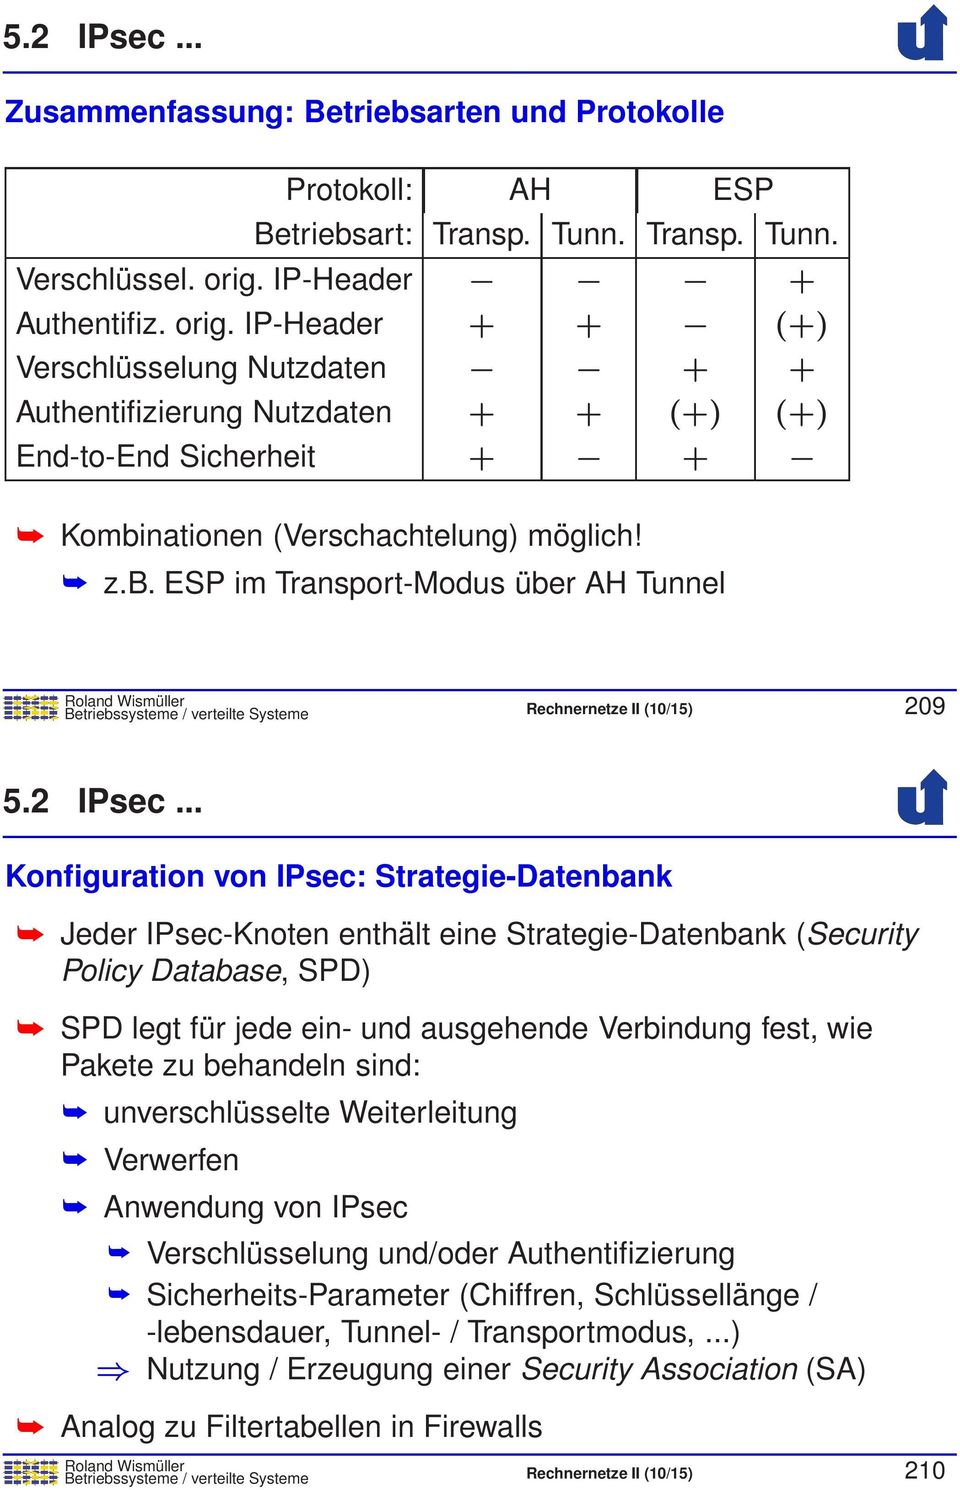 nationen (Verschachtelung) möglich! z.b. ESP im Transport-Modus über AH Tunnel Betriebssysteme / verteilte Systeme Rechnernetze II (10/15) 209 5.2 IPsec.